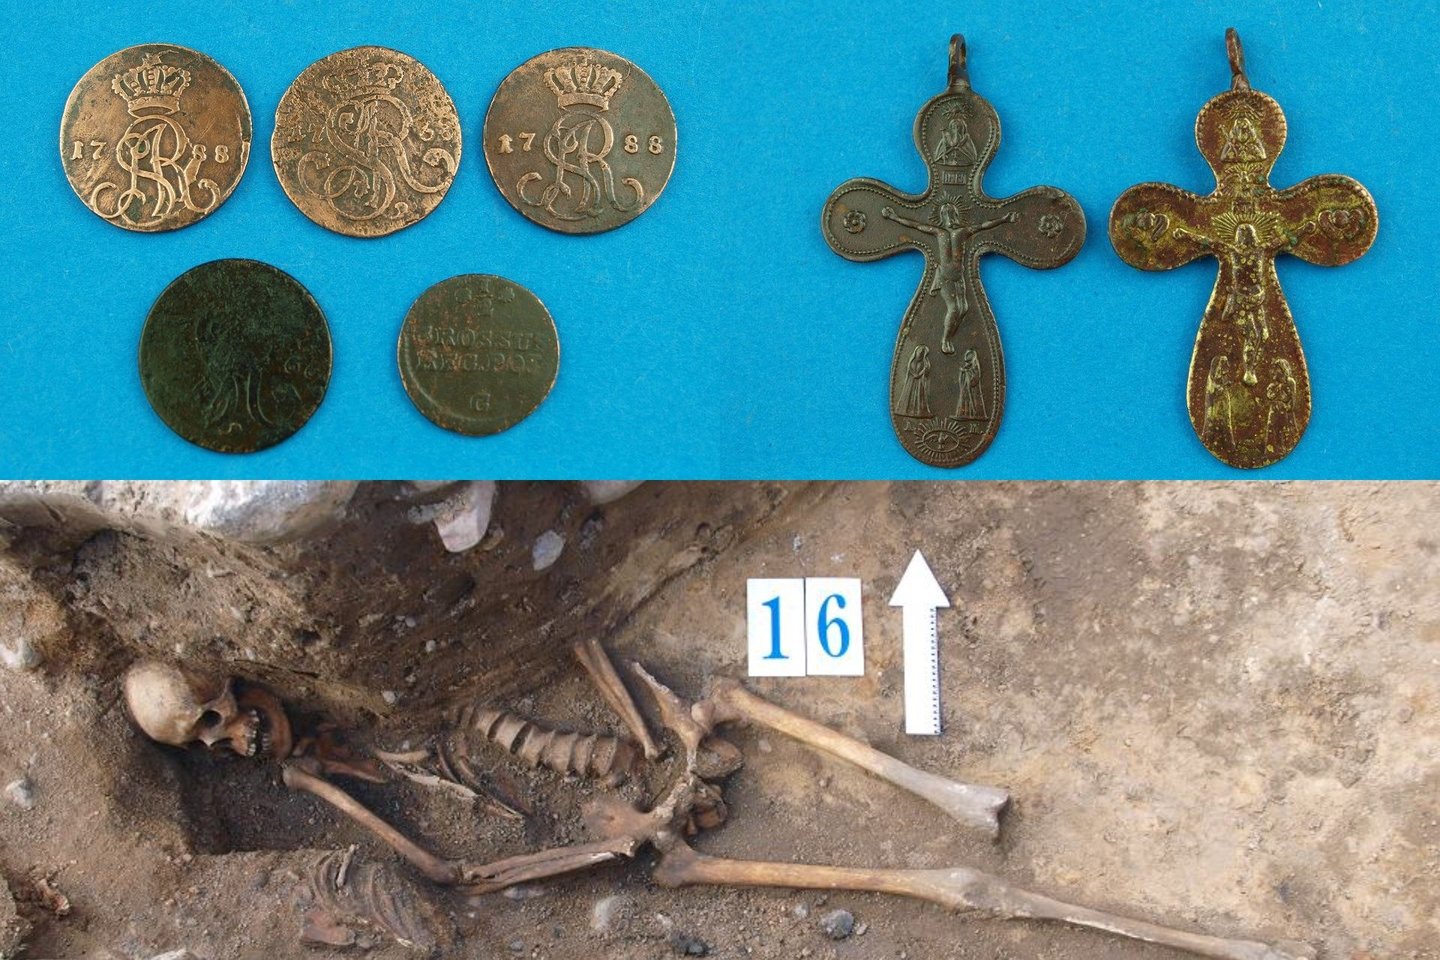  Kriptos viduje tyrėjai atrado 285 objektus, įskaitant 194 monetas, 21 kryžių ir medalį, 11 sagų, tris žiedus, dvi karsto rankenas, 23 keramikos fragmentus, aštuonis stiklo fragmentus ir lango fragmentą.<br> Dr. A. Nierychlewskos nuotr.